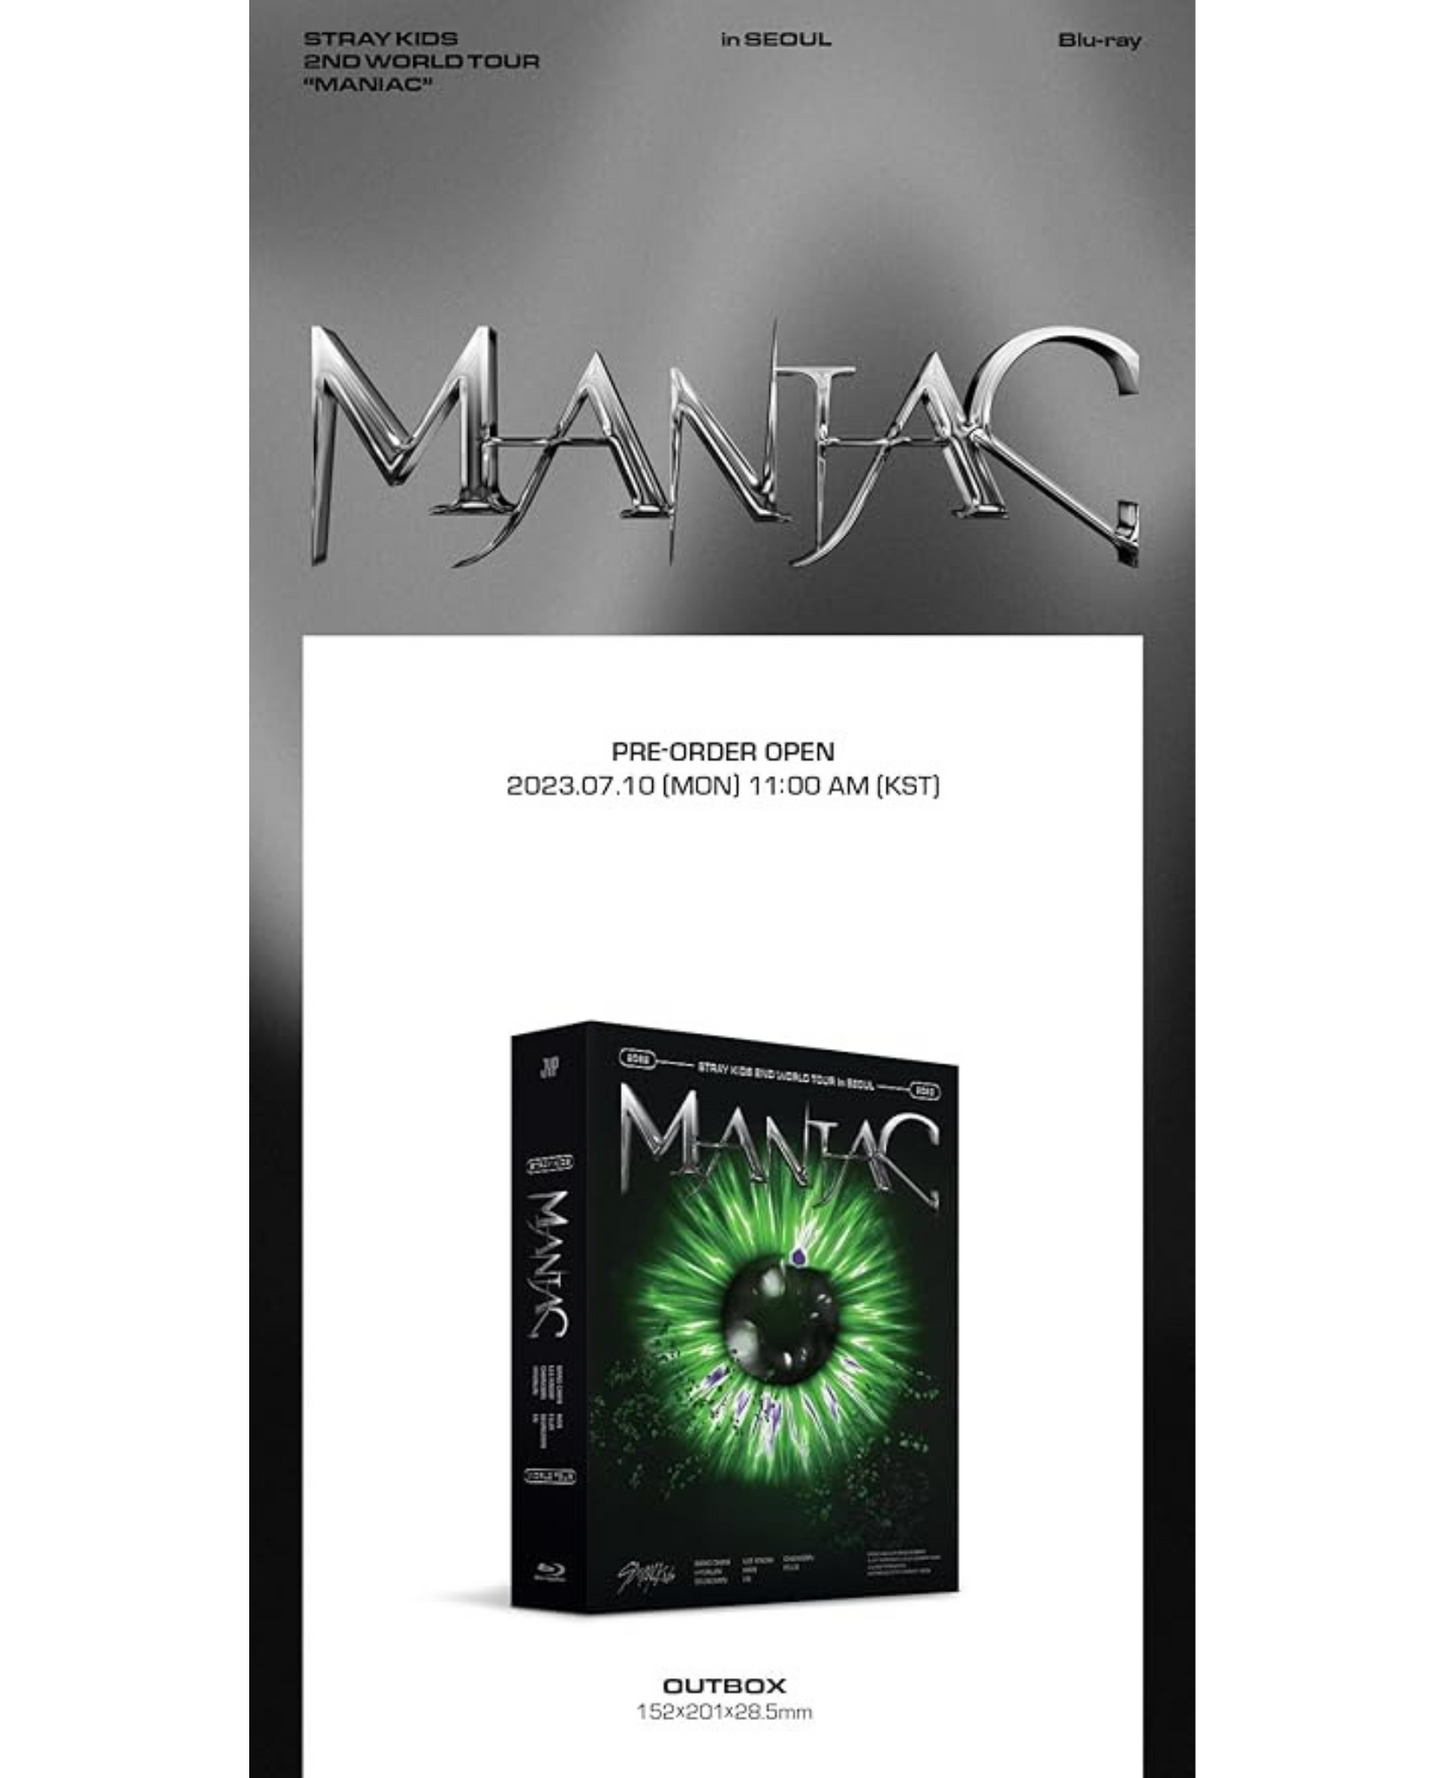 STRAY KIDS - 2ème tournée mondiale « MANIAC » à Séoul (Blu-ray)